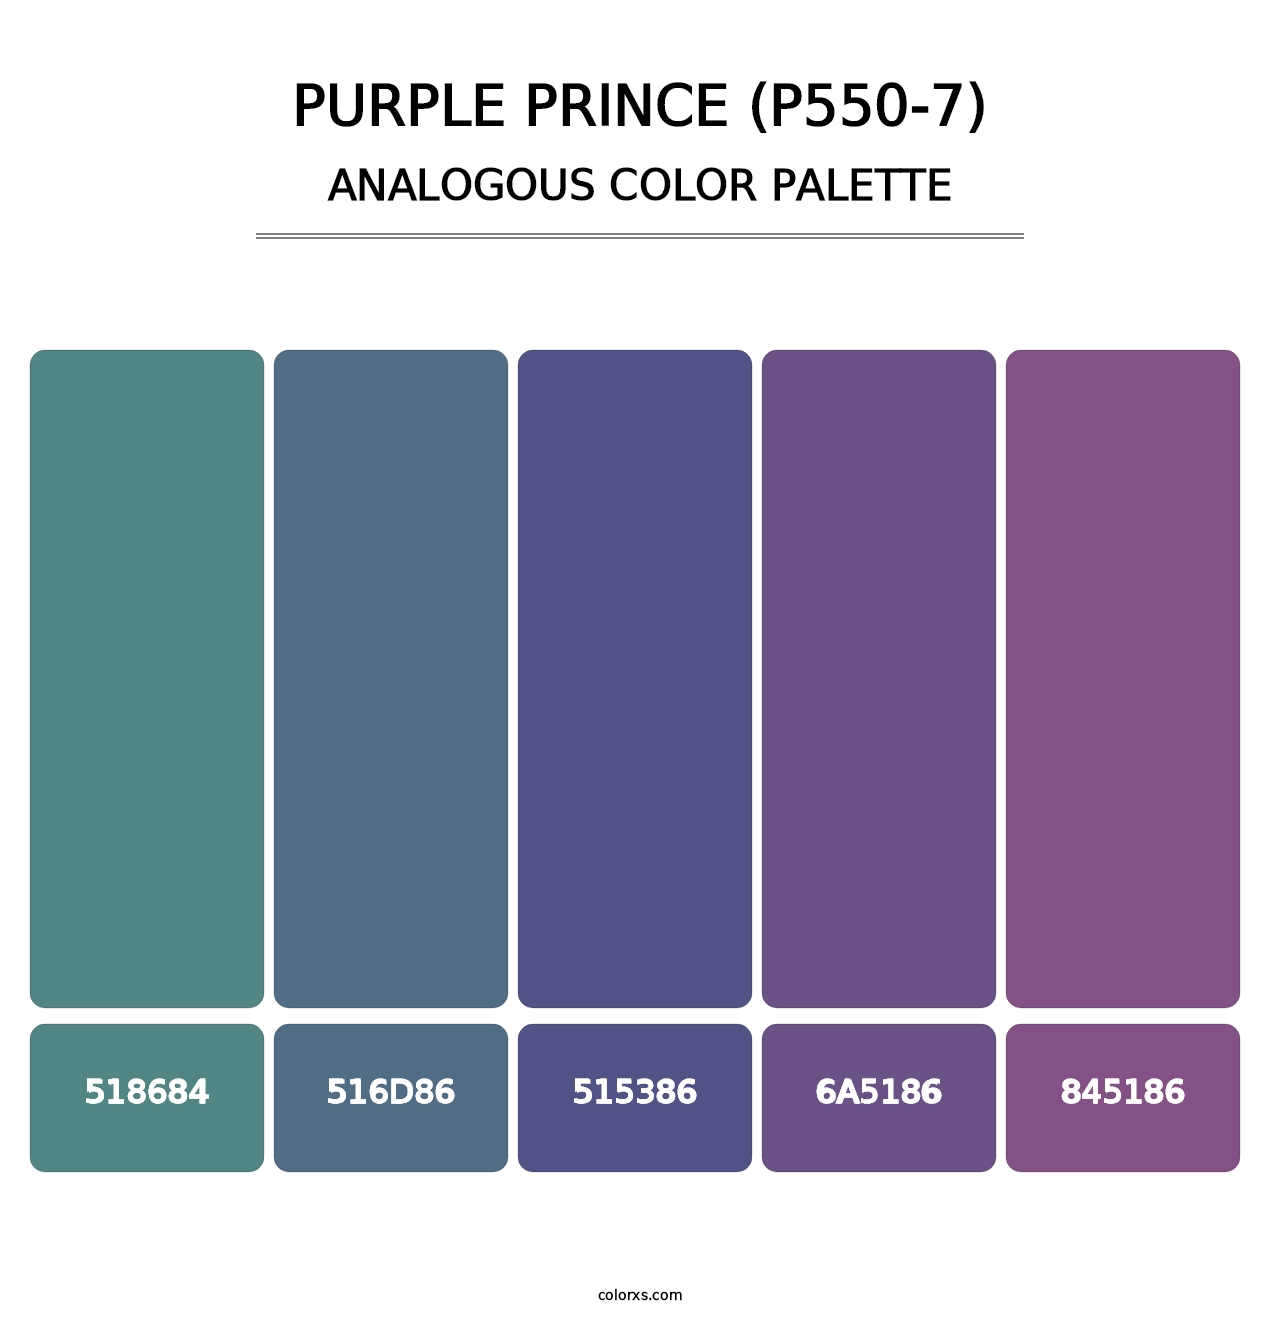 Purple Prince (P550-7) - Analogous Color Palette